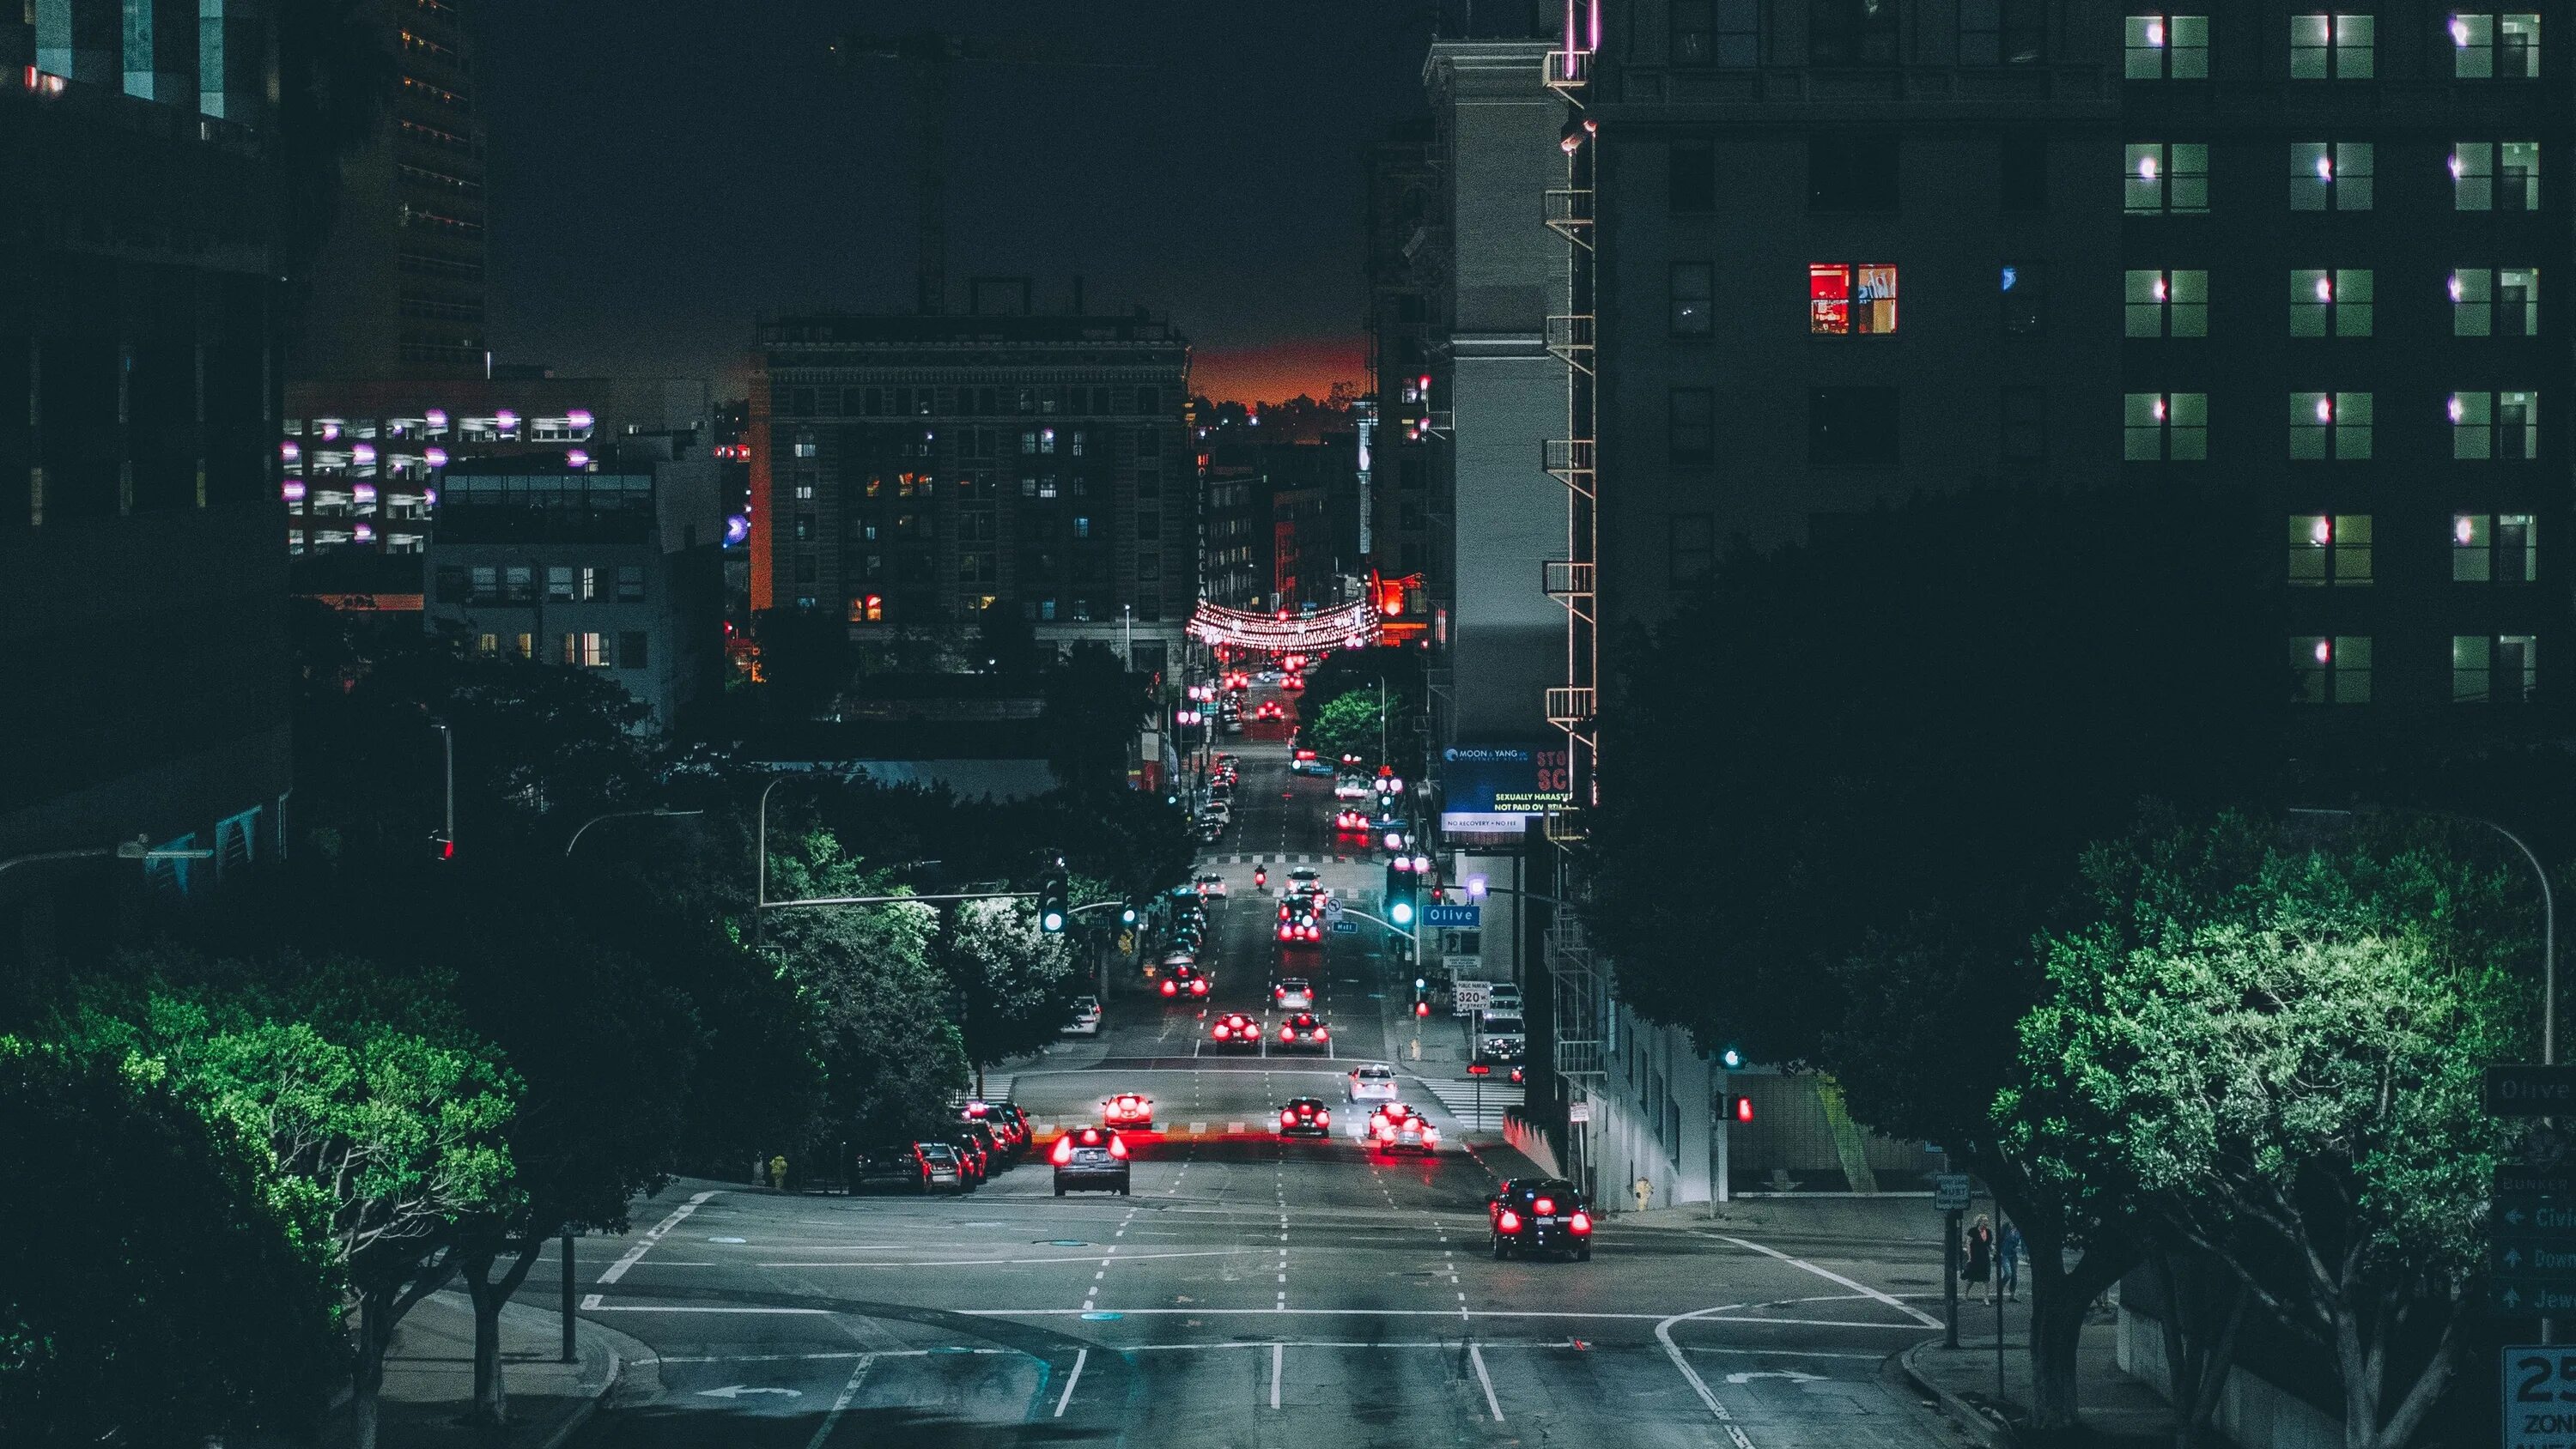 Last night city. Ночной Лос Анджелес. Найт Сити Лос Анджелес. Фон города Лос Анджелес. Эстетика ночного города.